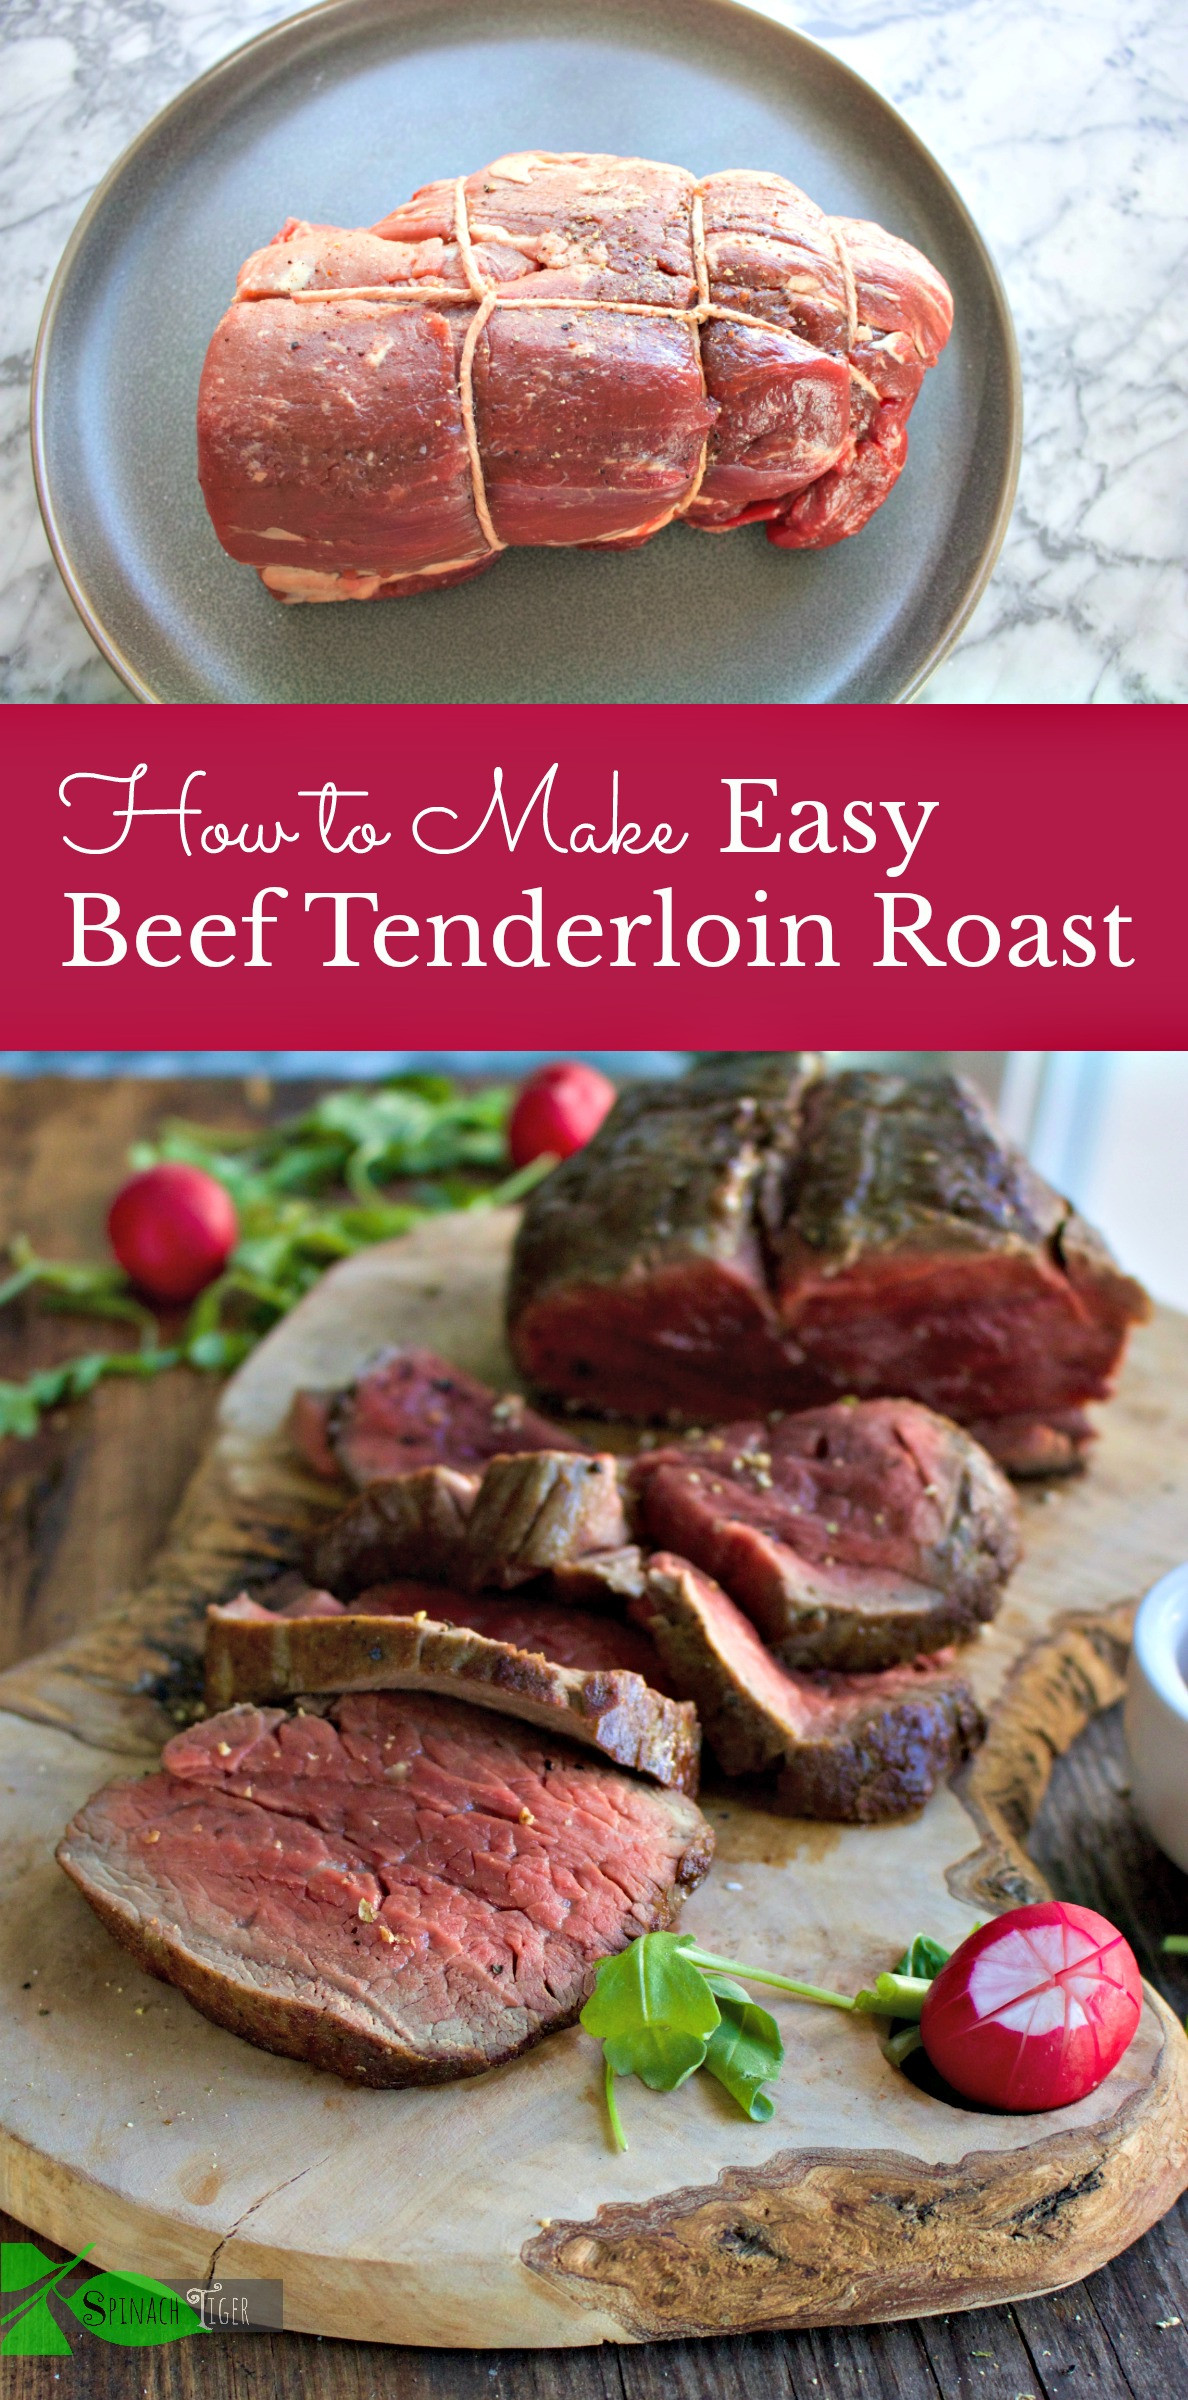 Easy Beef Tenderloin
 The Secret to Preparing Beef Tenderloin Roast Easy and